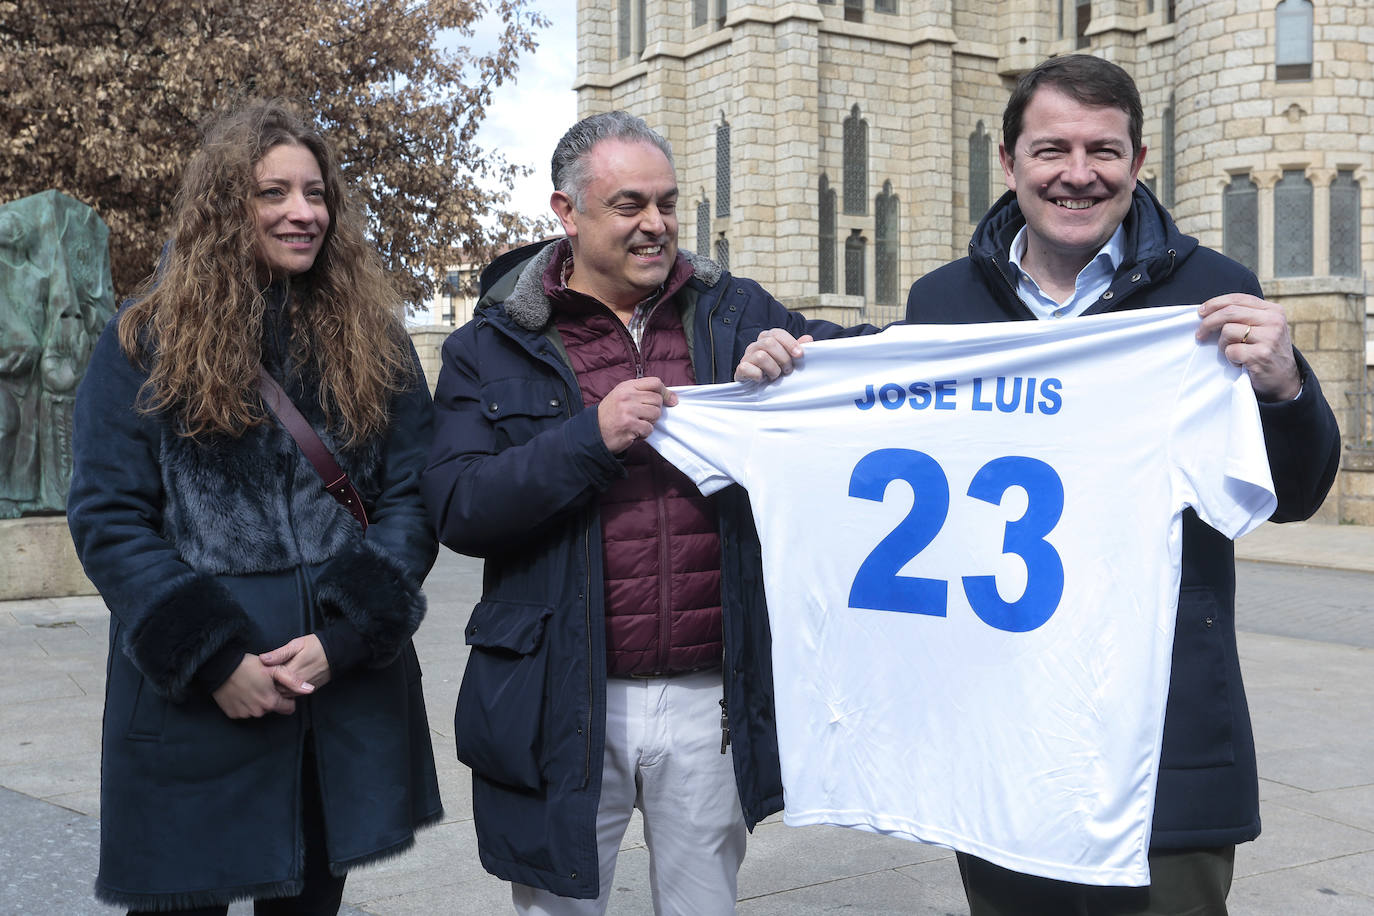 El Presidente del Partido Popular de Castilla y León, Alfonso Fernández Mañueco, visita Astorga junto al candidato a la Alcaldía del municipio, José Luis Nieto y junto a la presidenta del PP de León, Ester Muñoz.